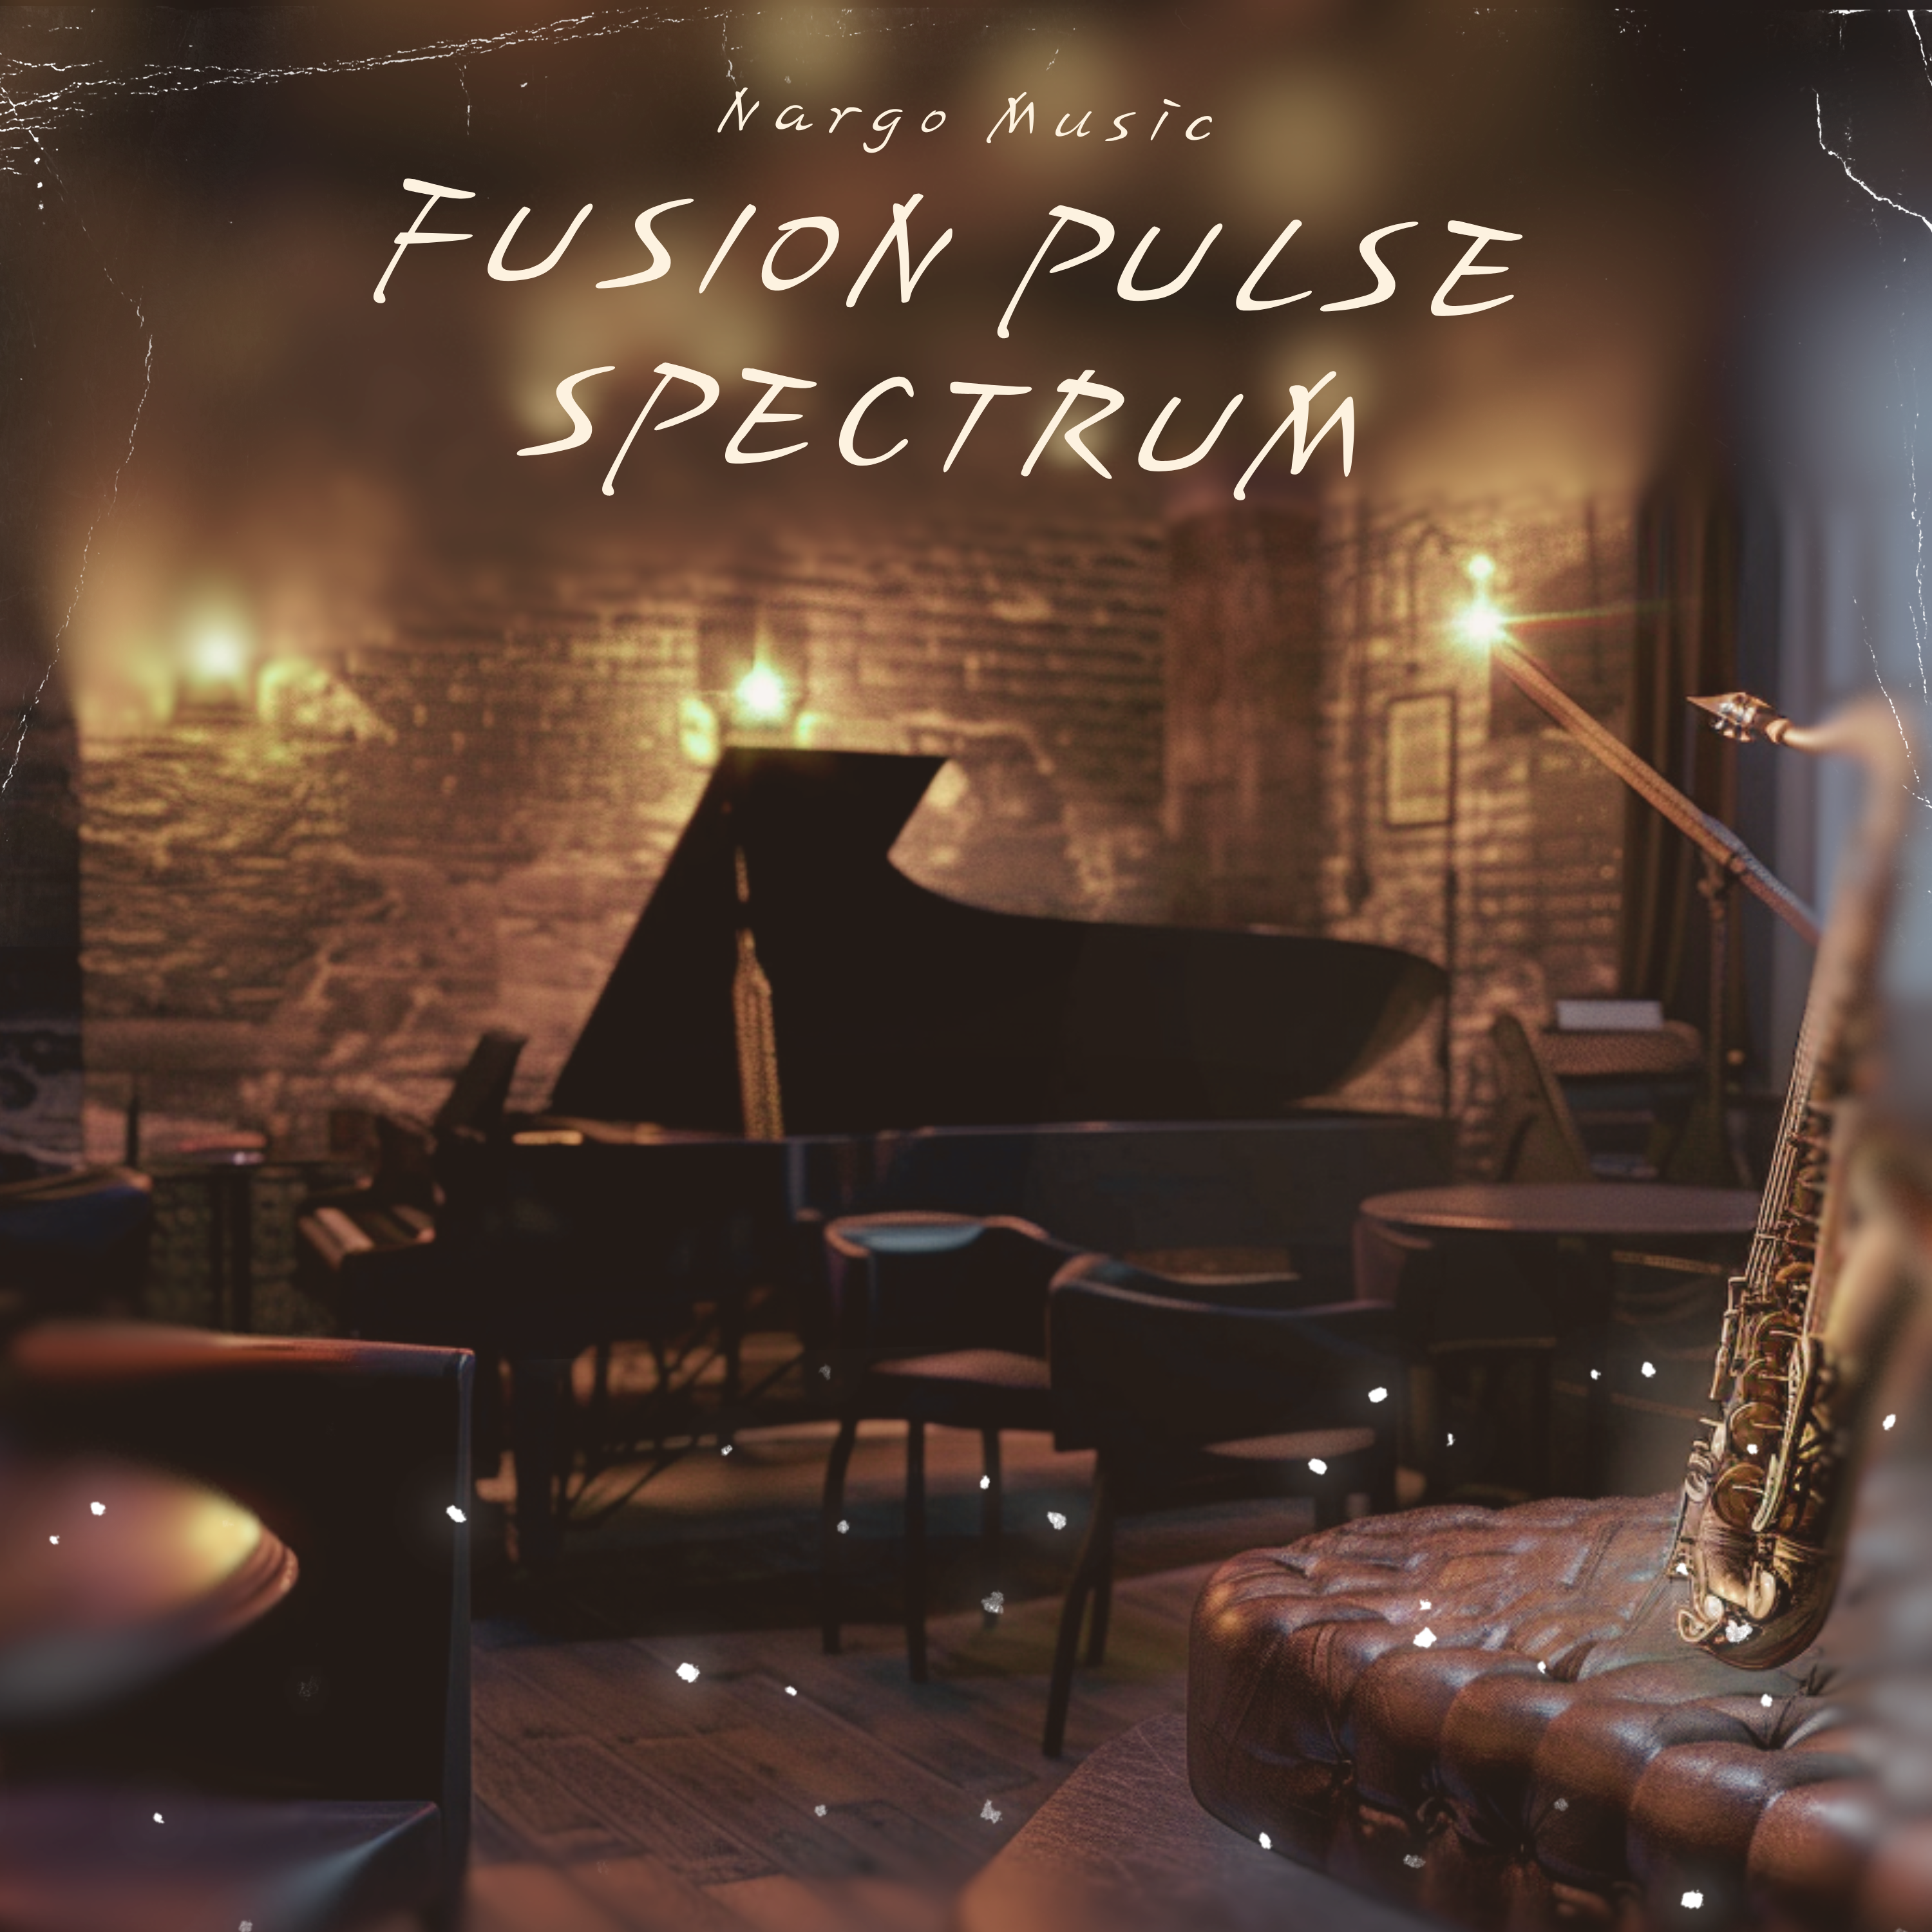 Fusion Pulse Spectrum